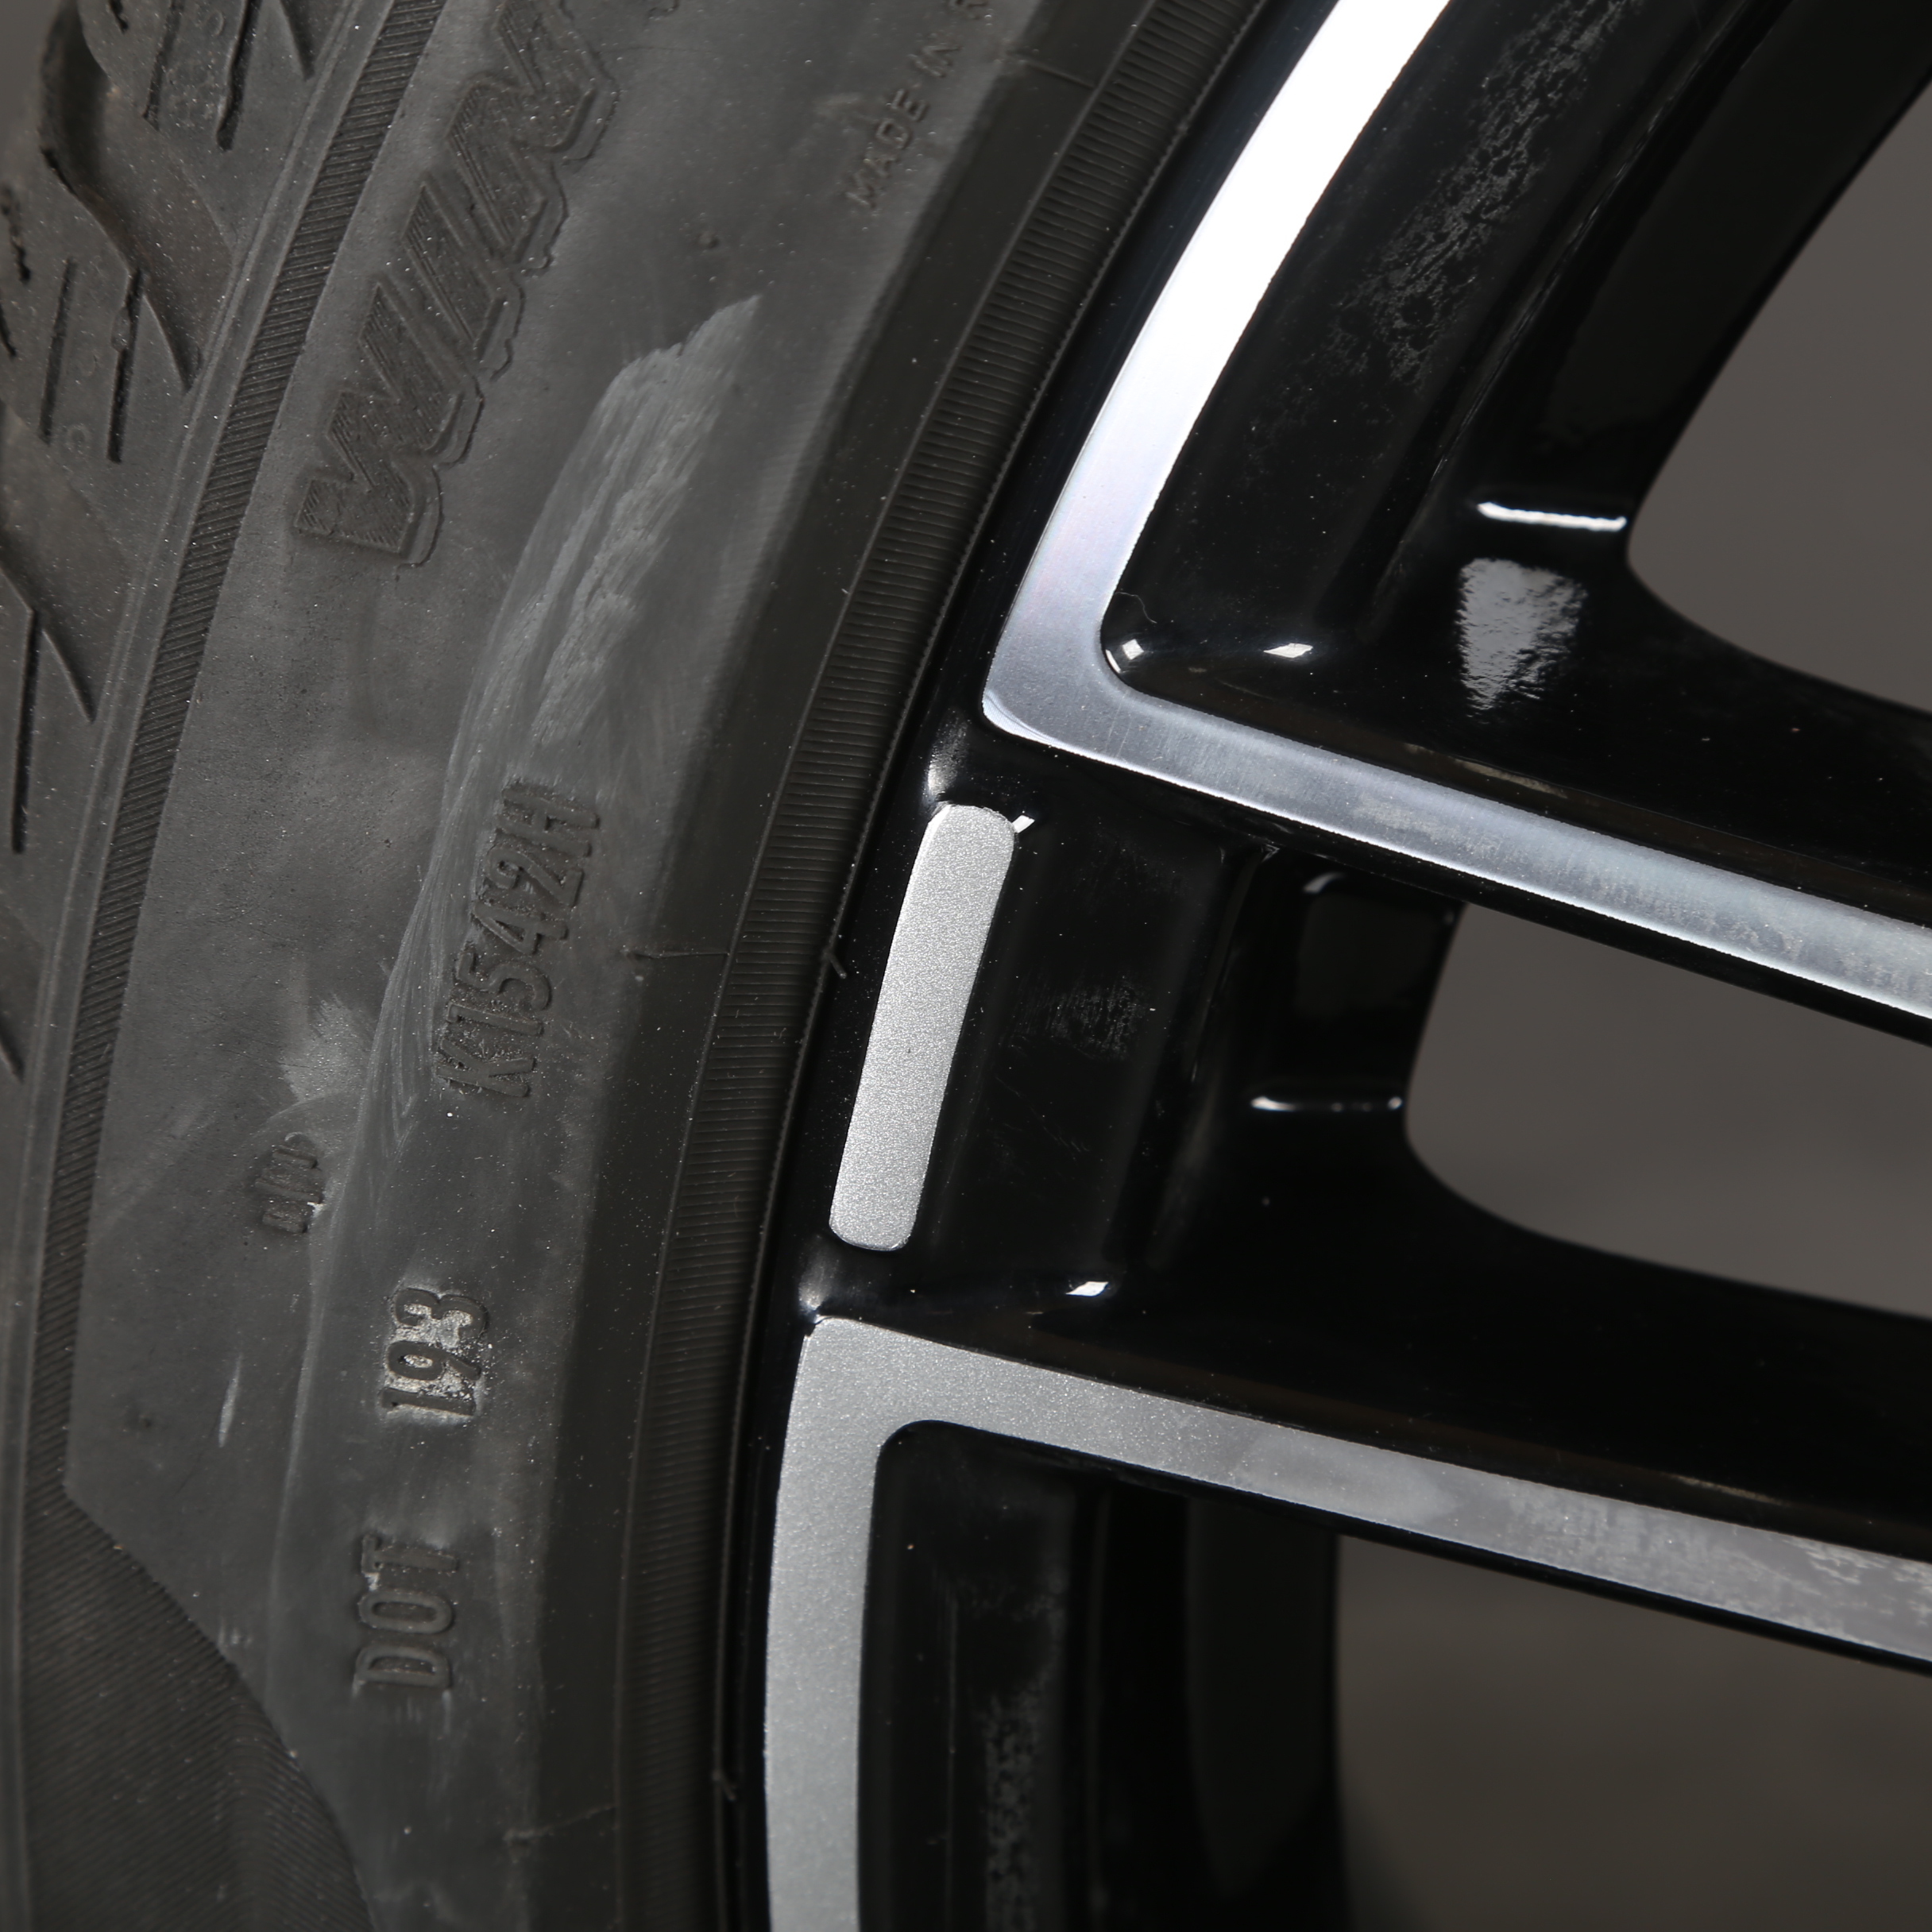 18 pouces roues d'hiver d'origine Mercedes Classe C W206 A2064014900 pneus d'hiver